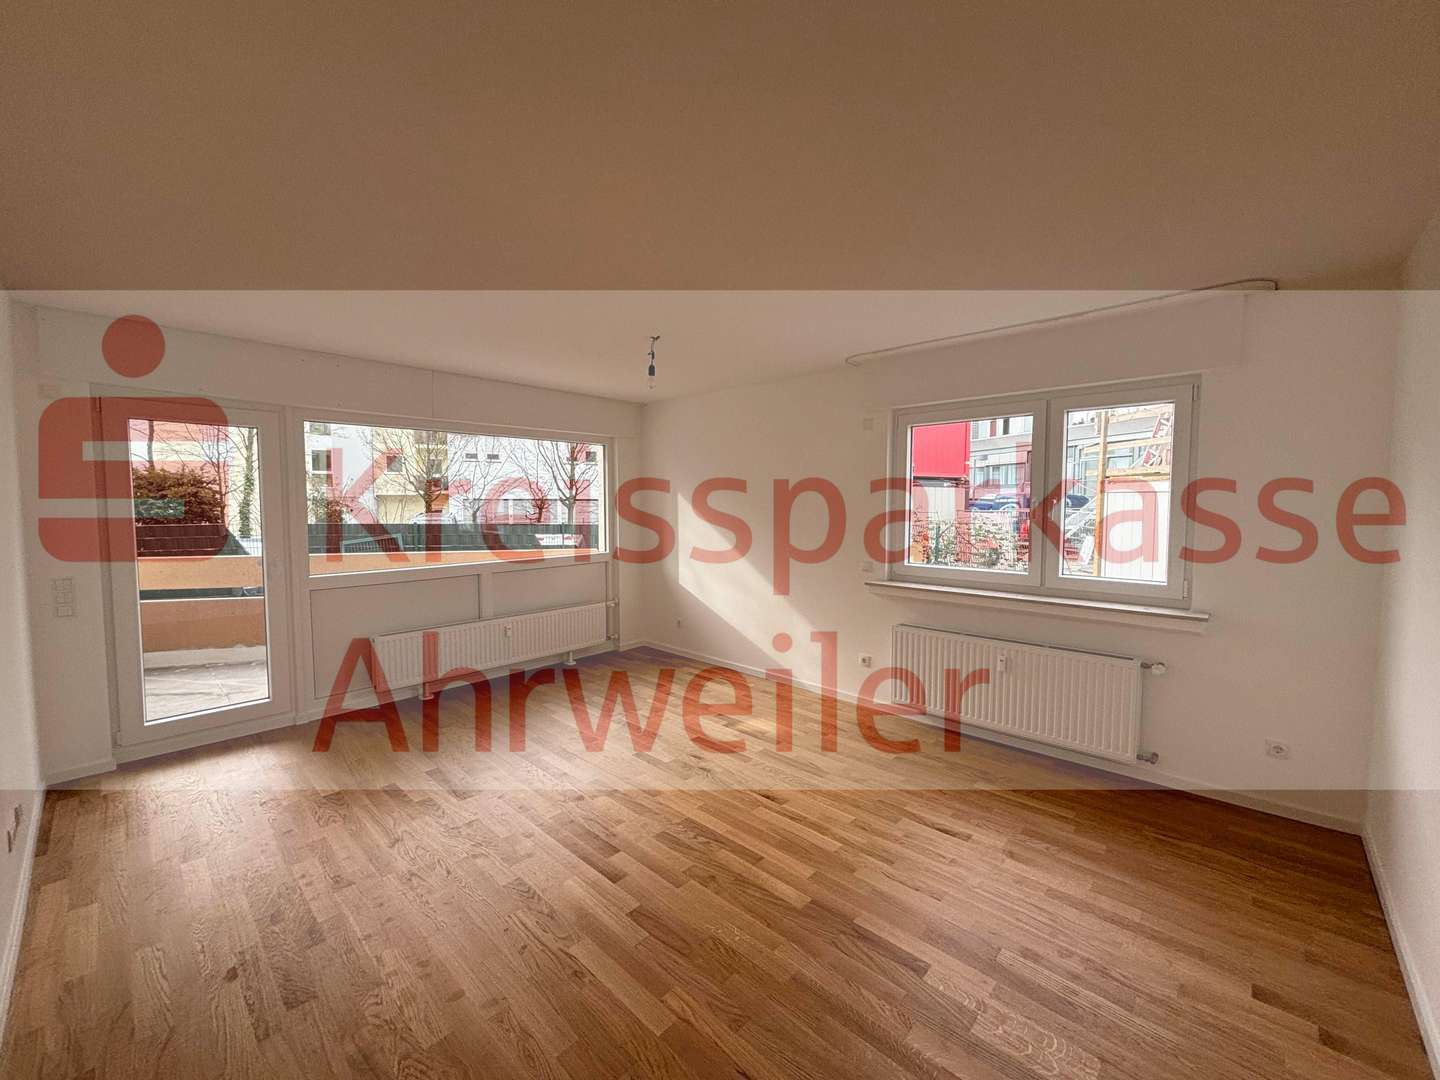 null - Erdgeschosswohnung in 53474 Bad Neuenahr-Ahrweiler mit 84m² kaufen